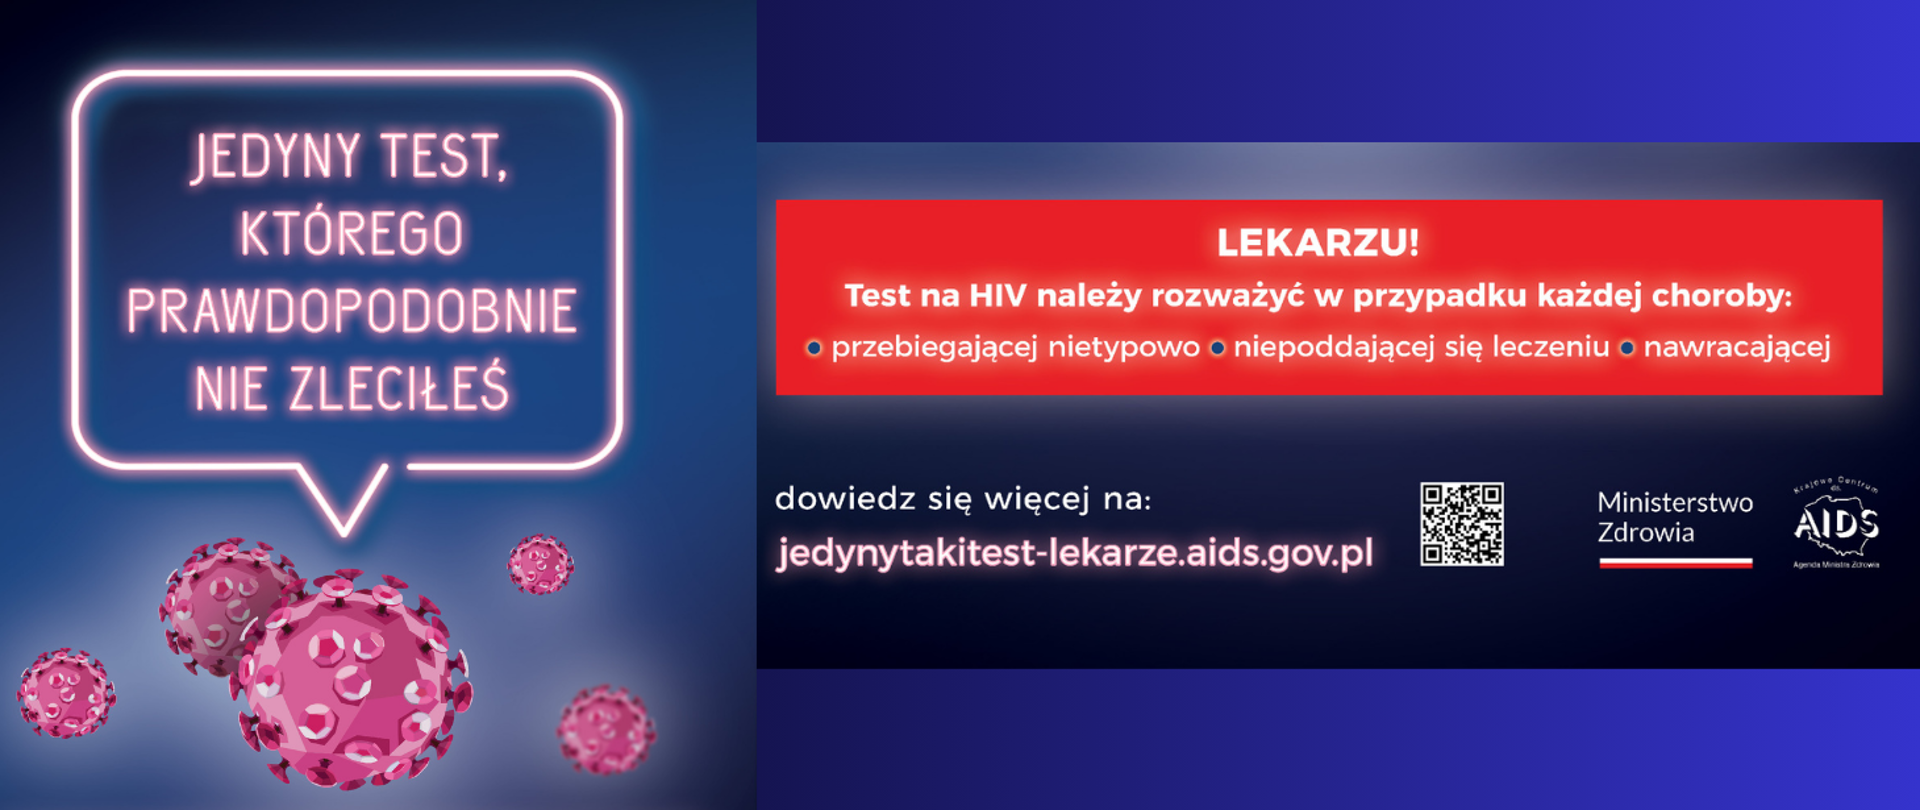 „Jedyny test, którego prawdopodobnie nie zleciłeś” LEKARZU. Test na HIV należy rozważyć w przypadku każdej choroby: przebiegającej nietypowo, niepoddającej się leczeniu, nawracającej. Dowiedz się więcej na: https://jedynytakitest-lekarze.aids.gov.pl/